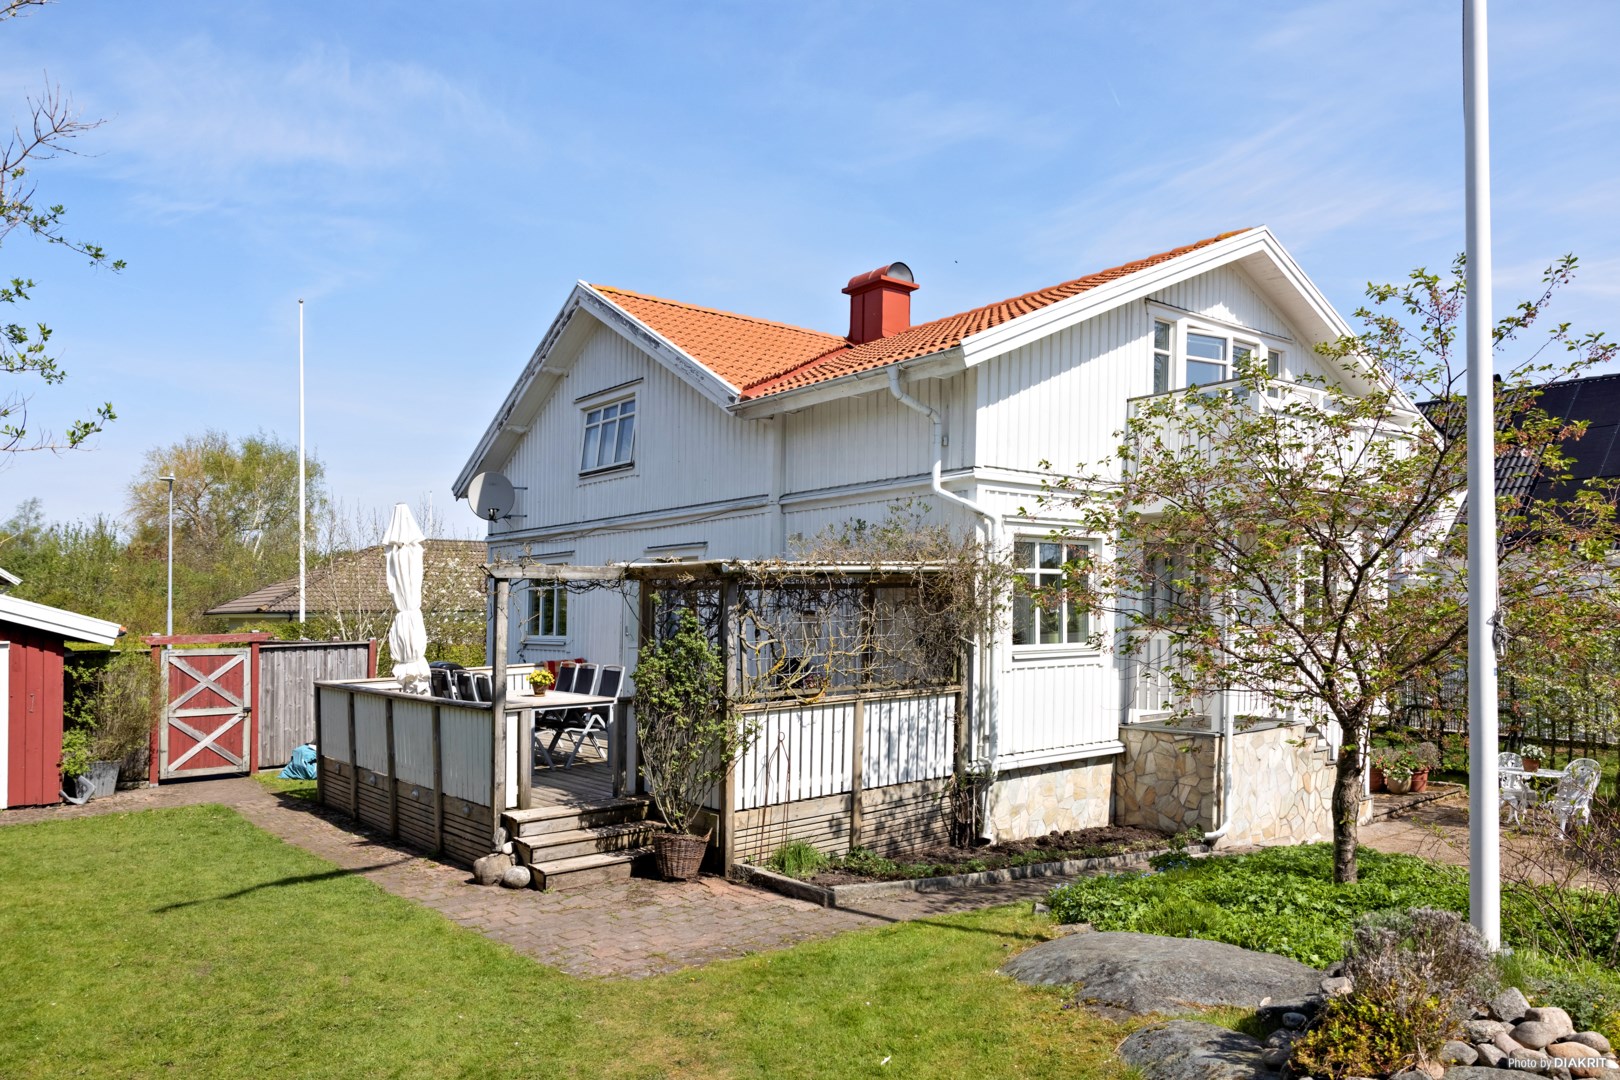 Villa i Önnered, Västra Frölunda, Västra Götaland, Göteborg, Bolleskärsgatan 67B